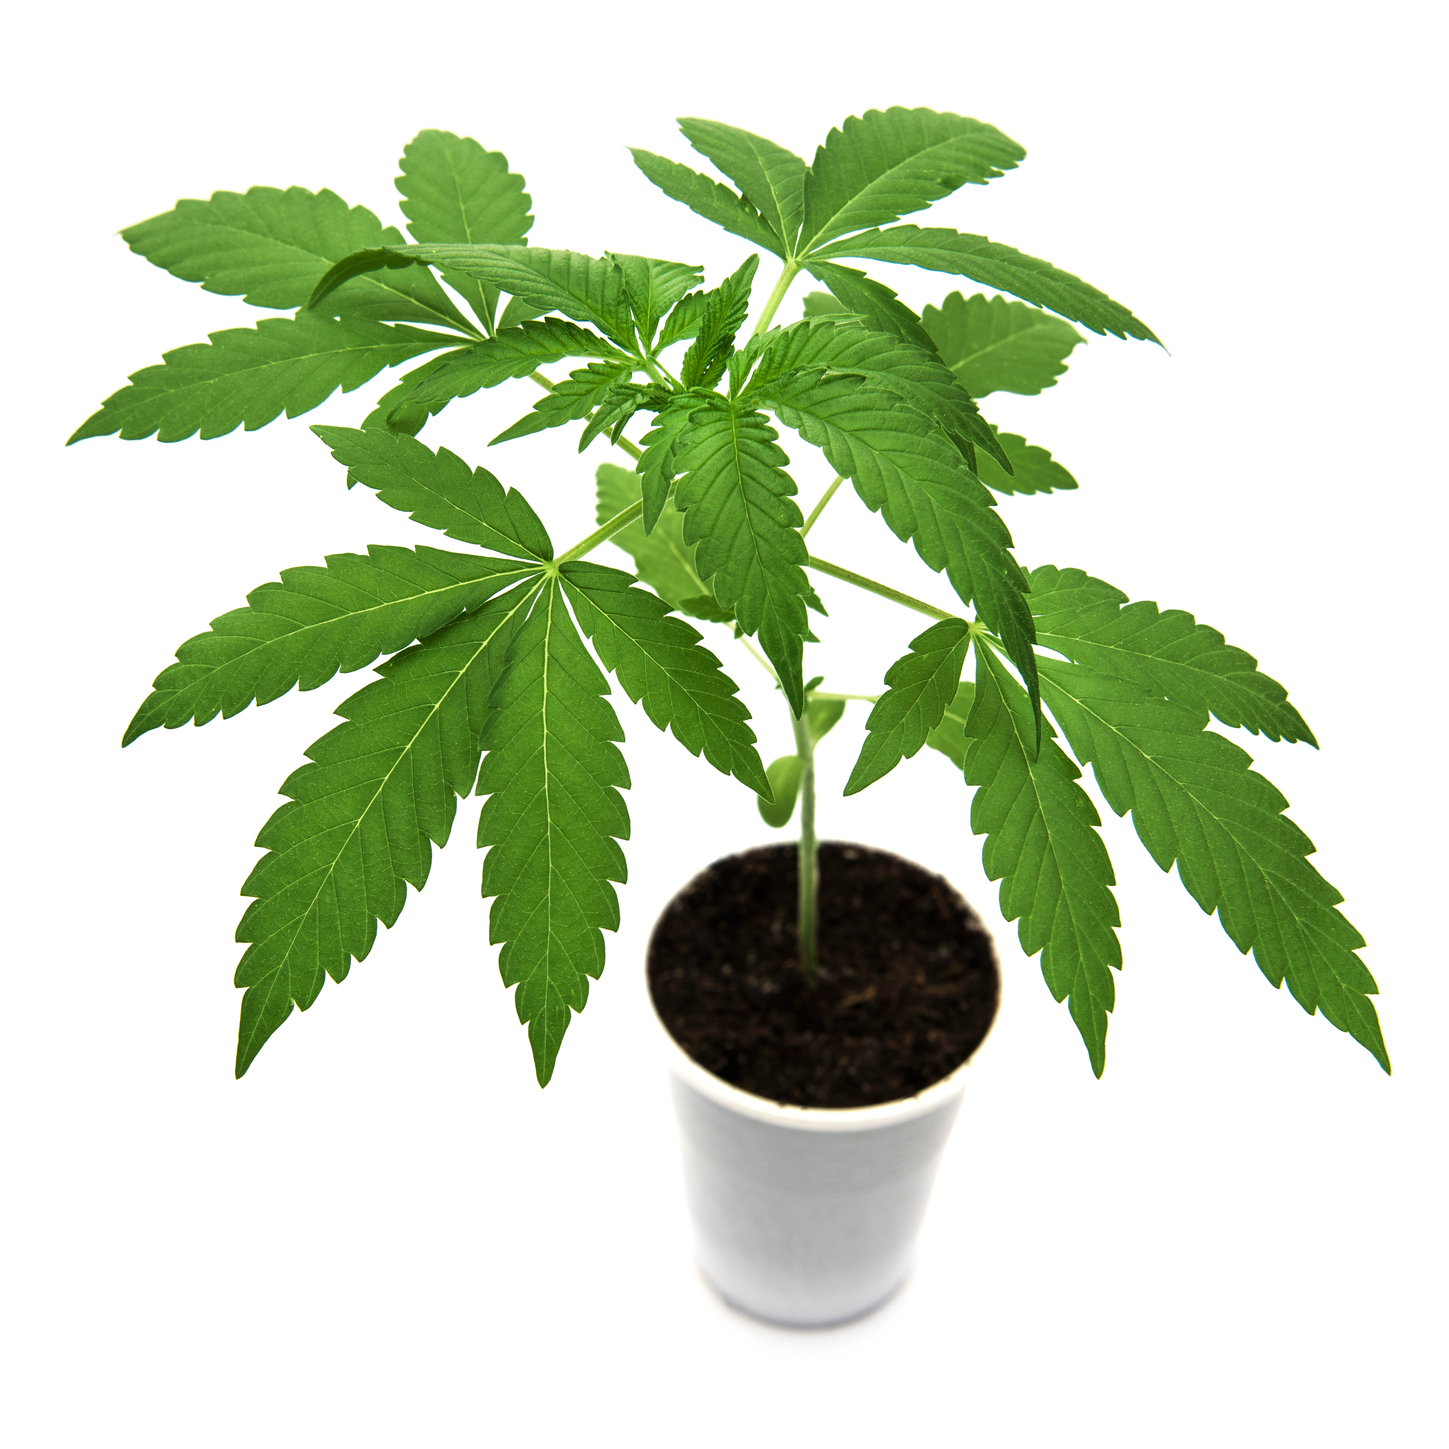 Medicinsk cannabis - Foto: Crestock.com